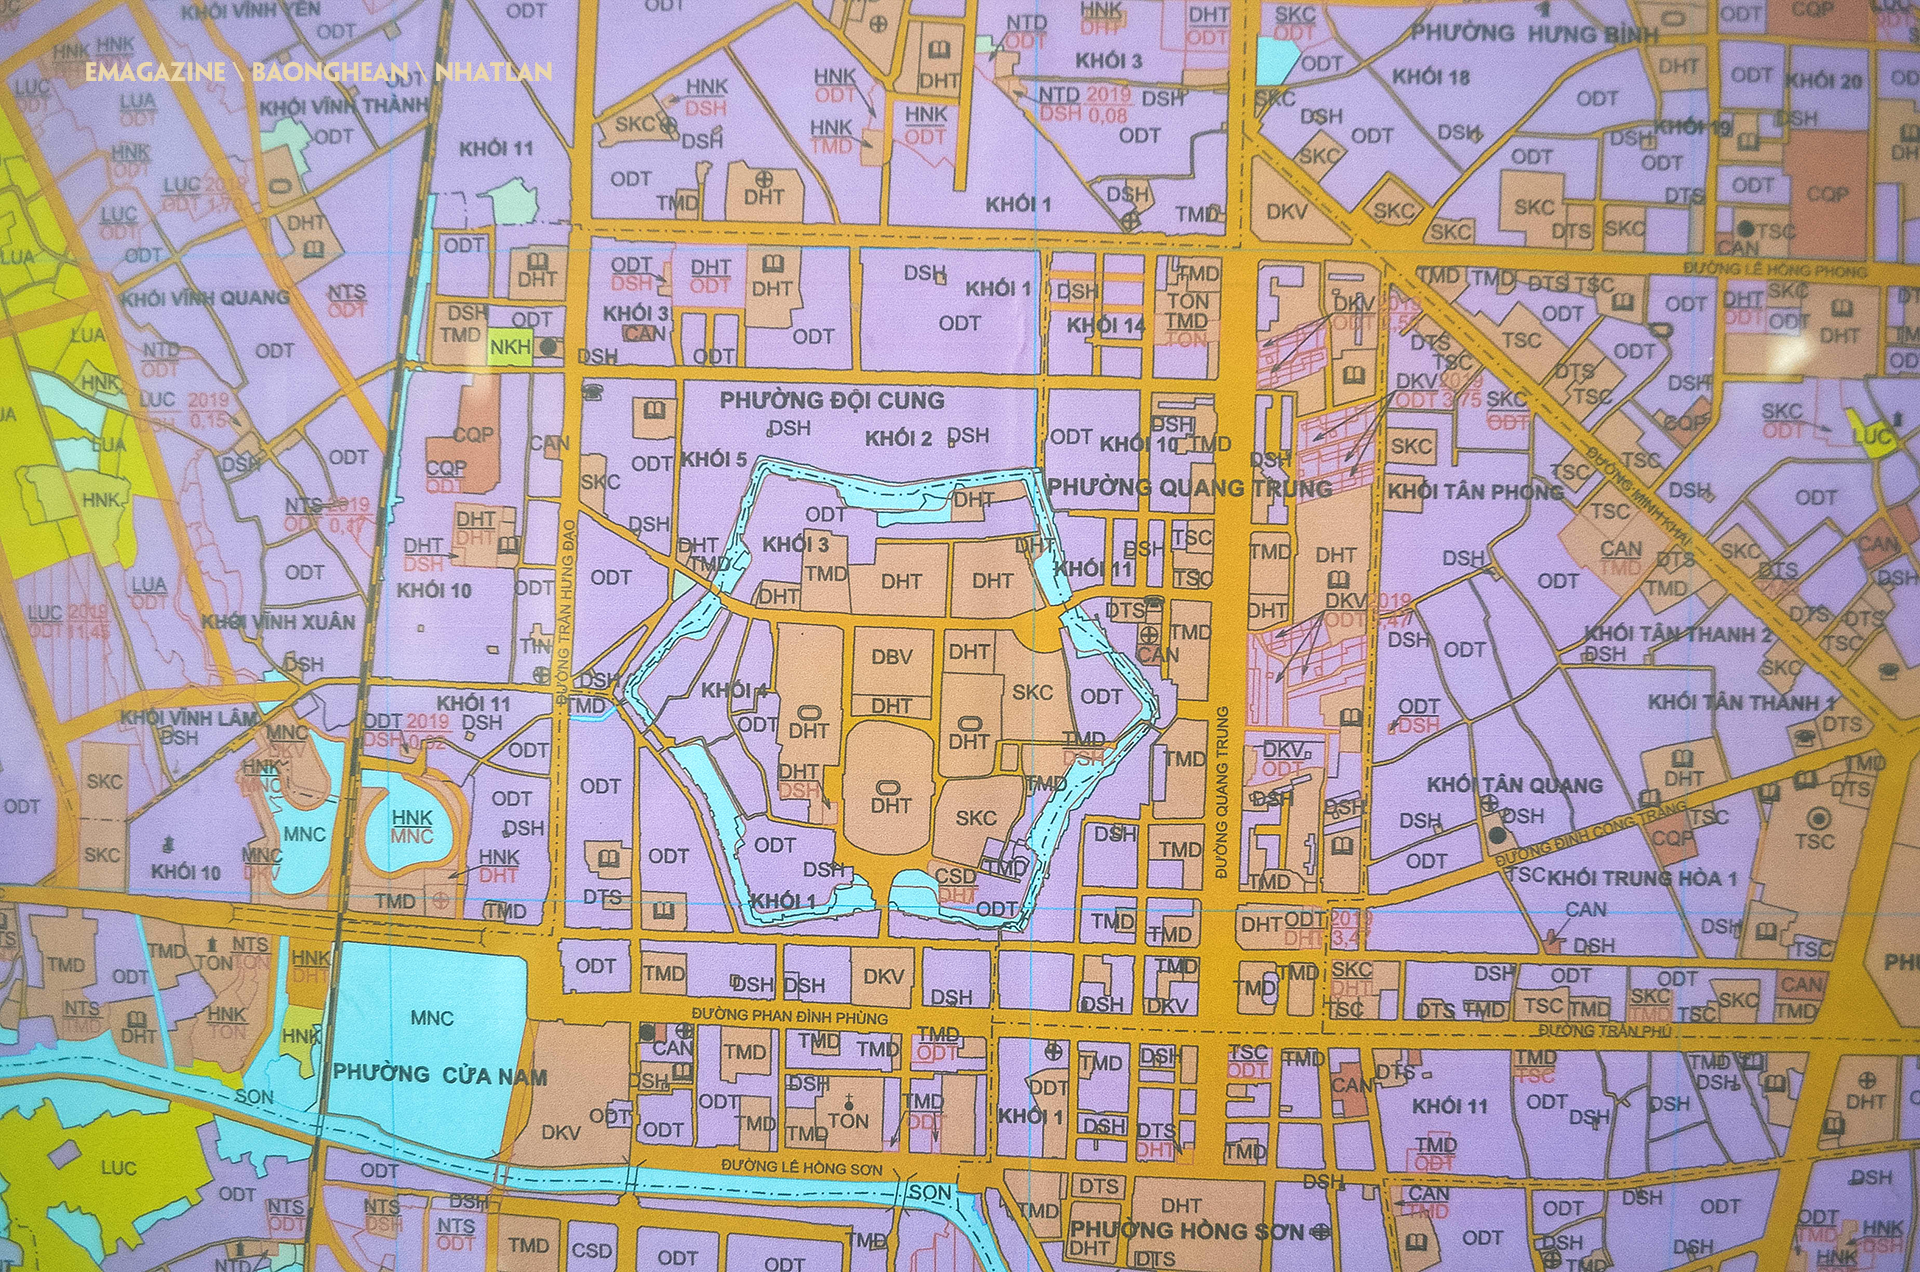 Bản đồ quy hoạch sử dụng đất năm 2019 và quy hoạch sử dụng đất đến năm 2020 của thành phố Vinh, khu vực có nhà ở của 105 hộ dân đều là đất ở đô thị.